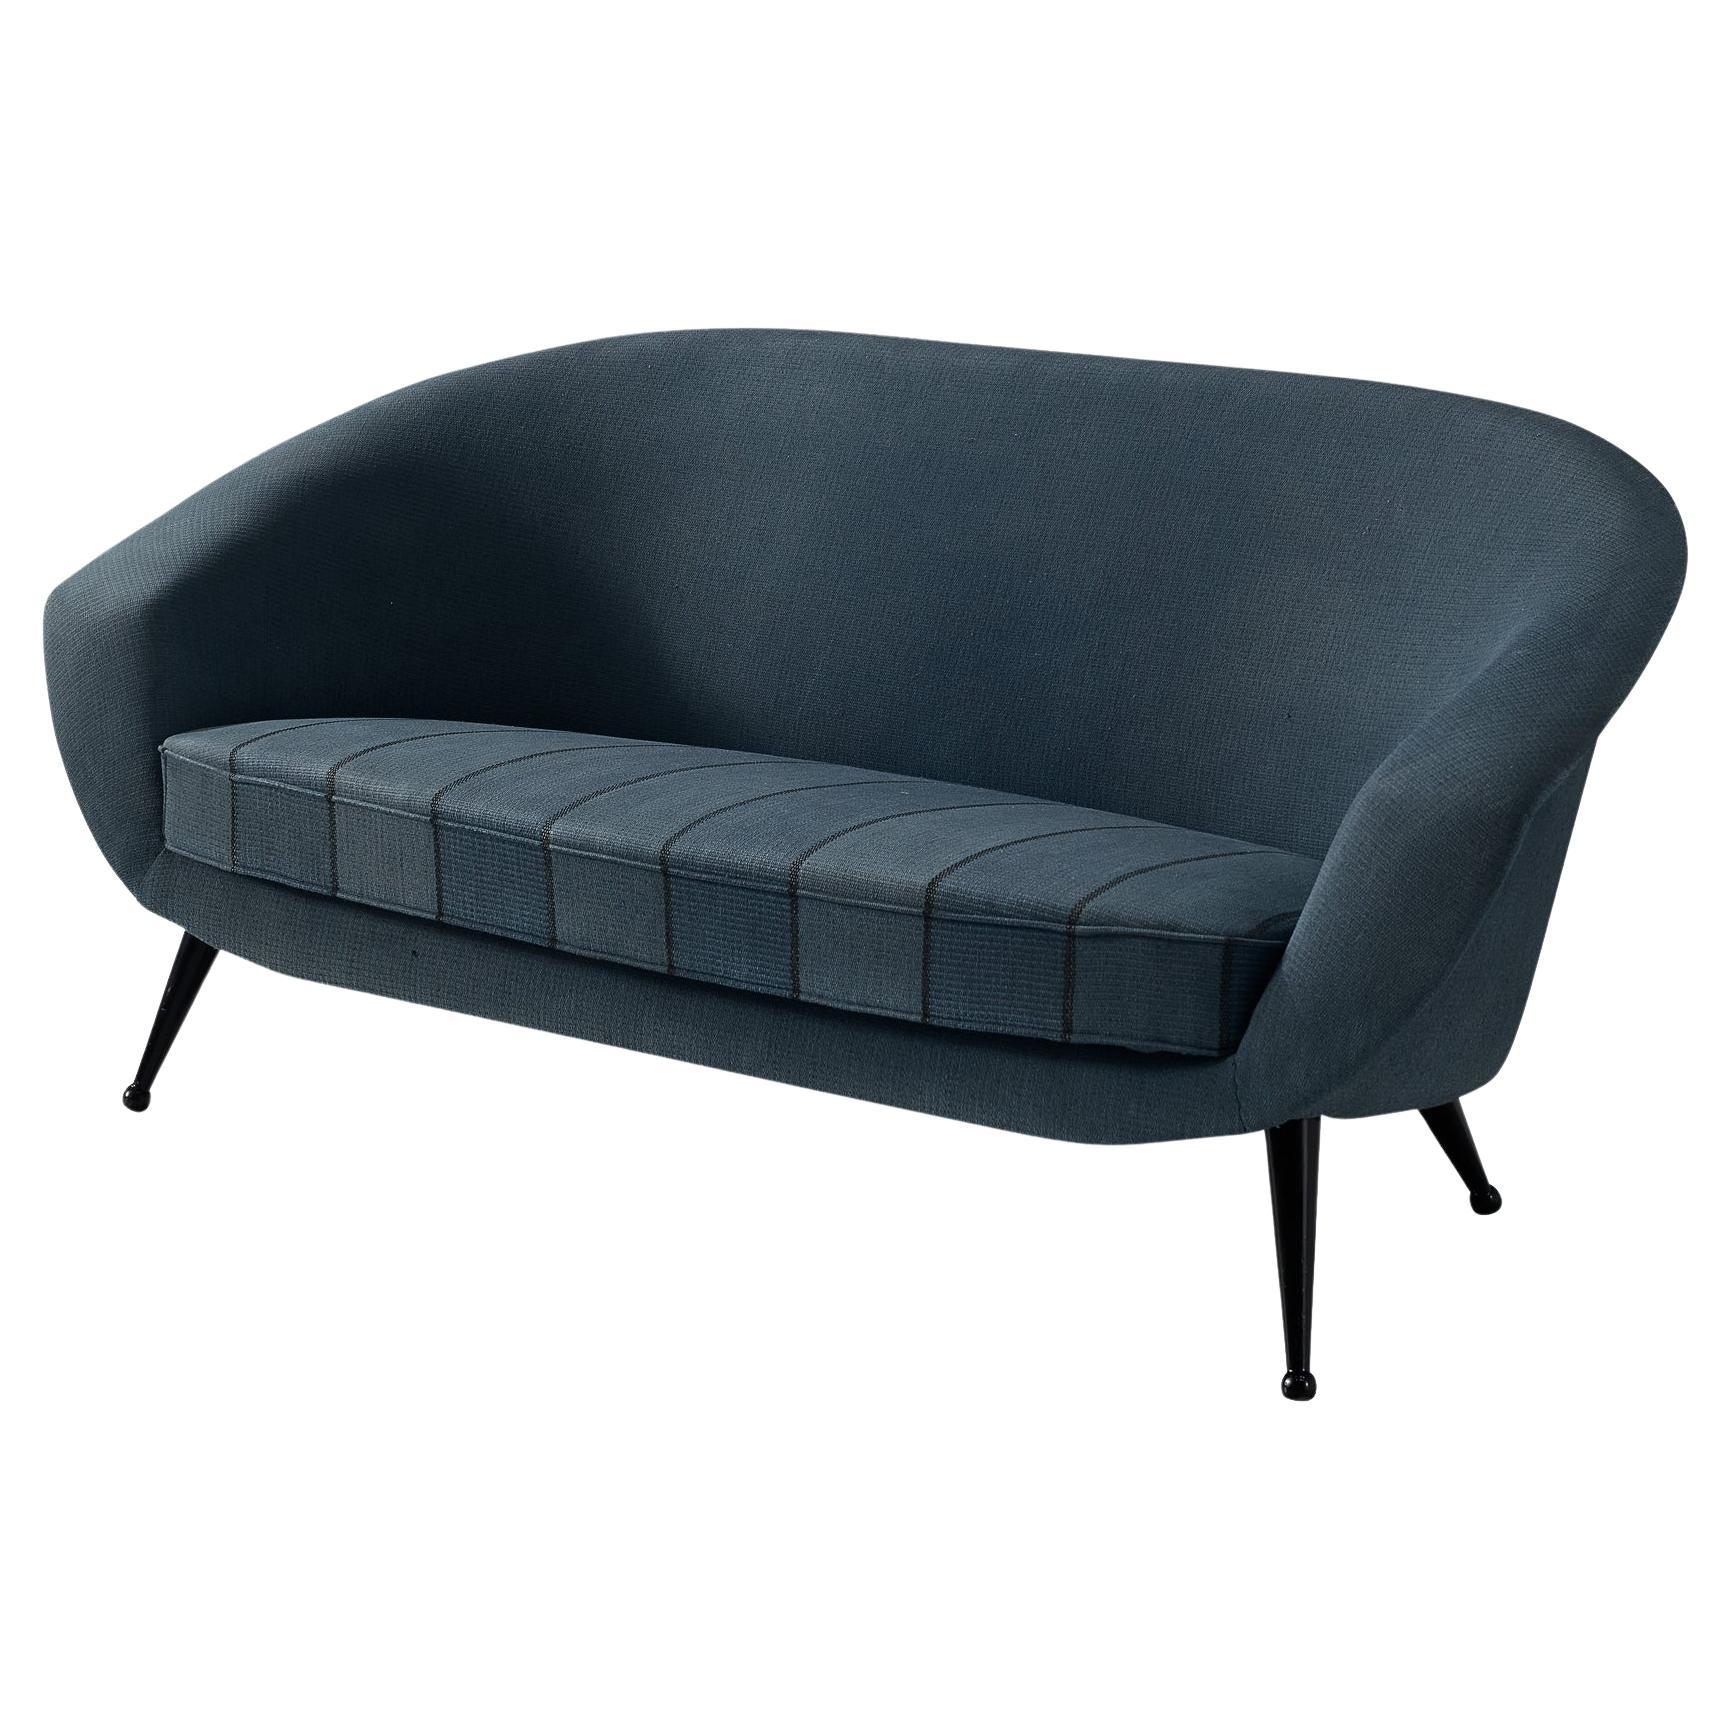 Folke Jansson 'Tellus' Sofa in Blue Upholstery 